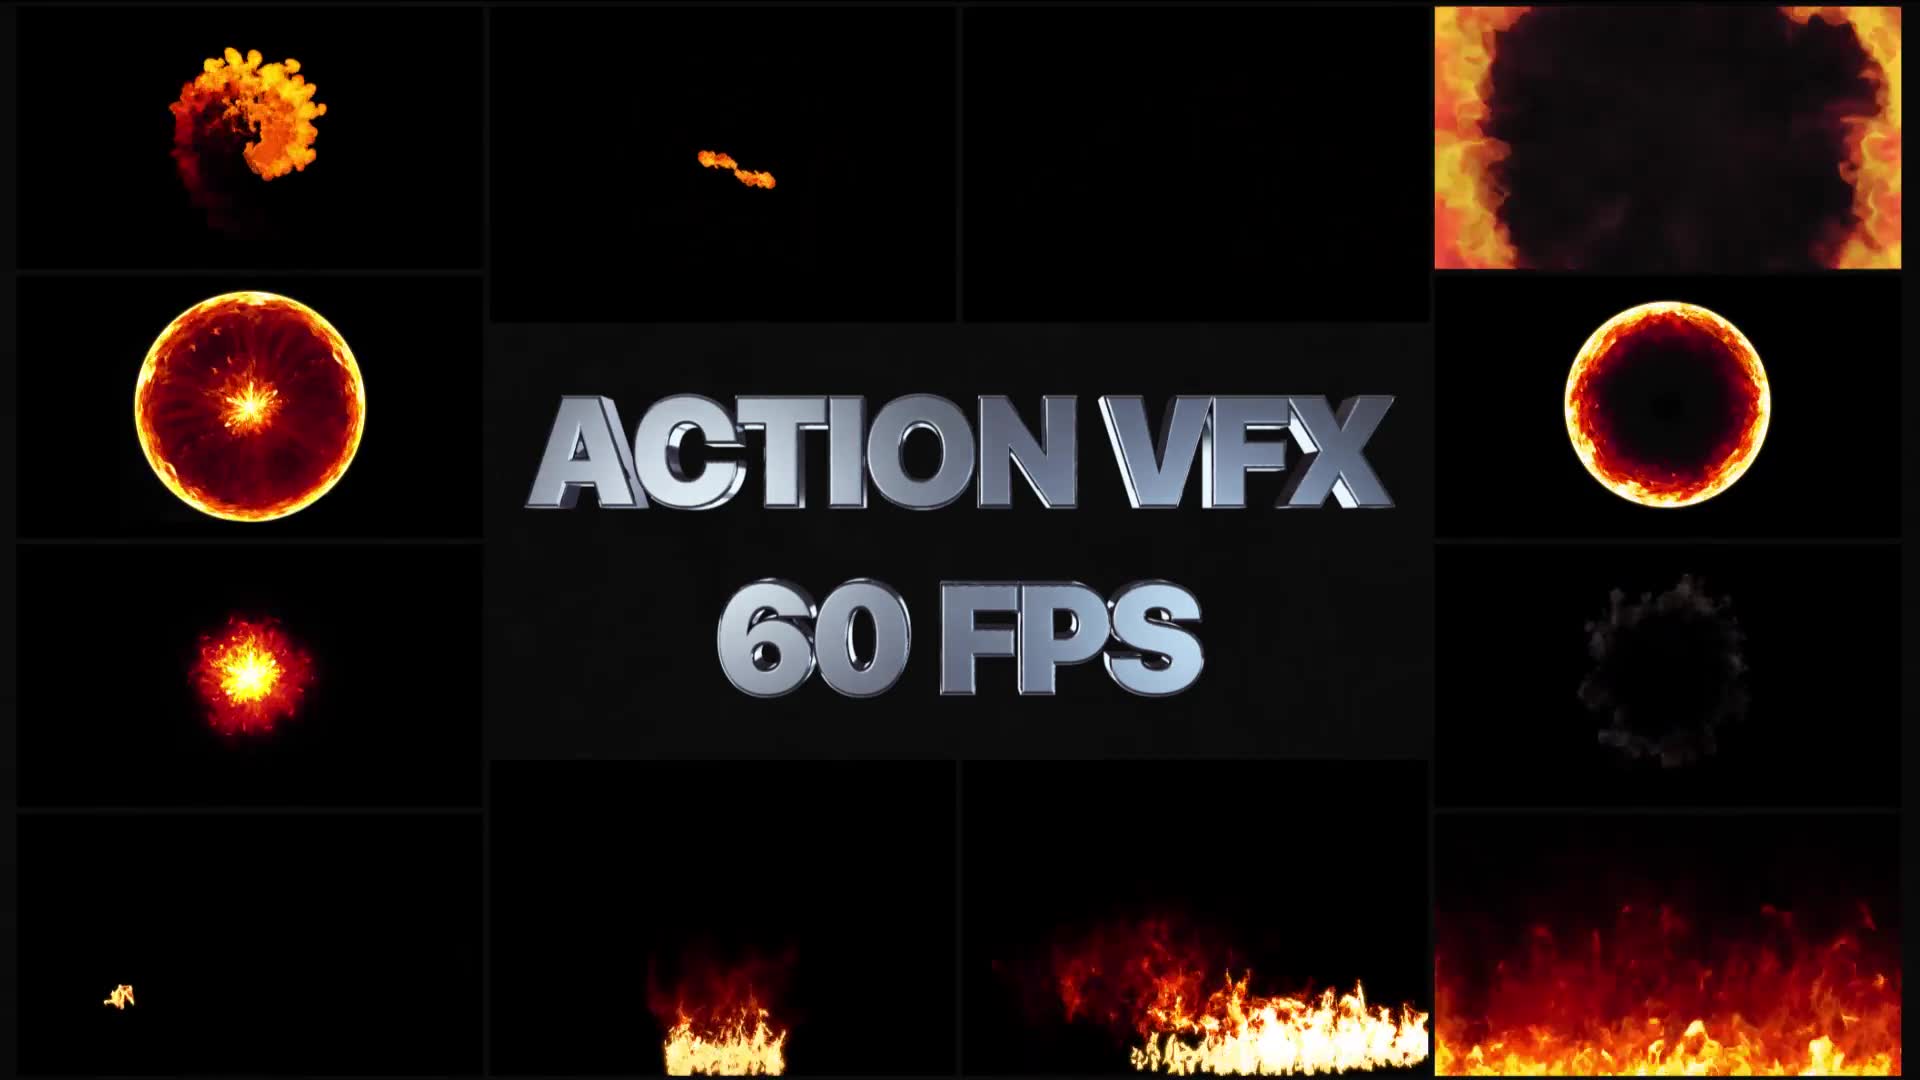 vfx after effect download